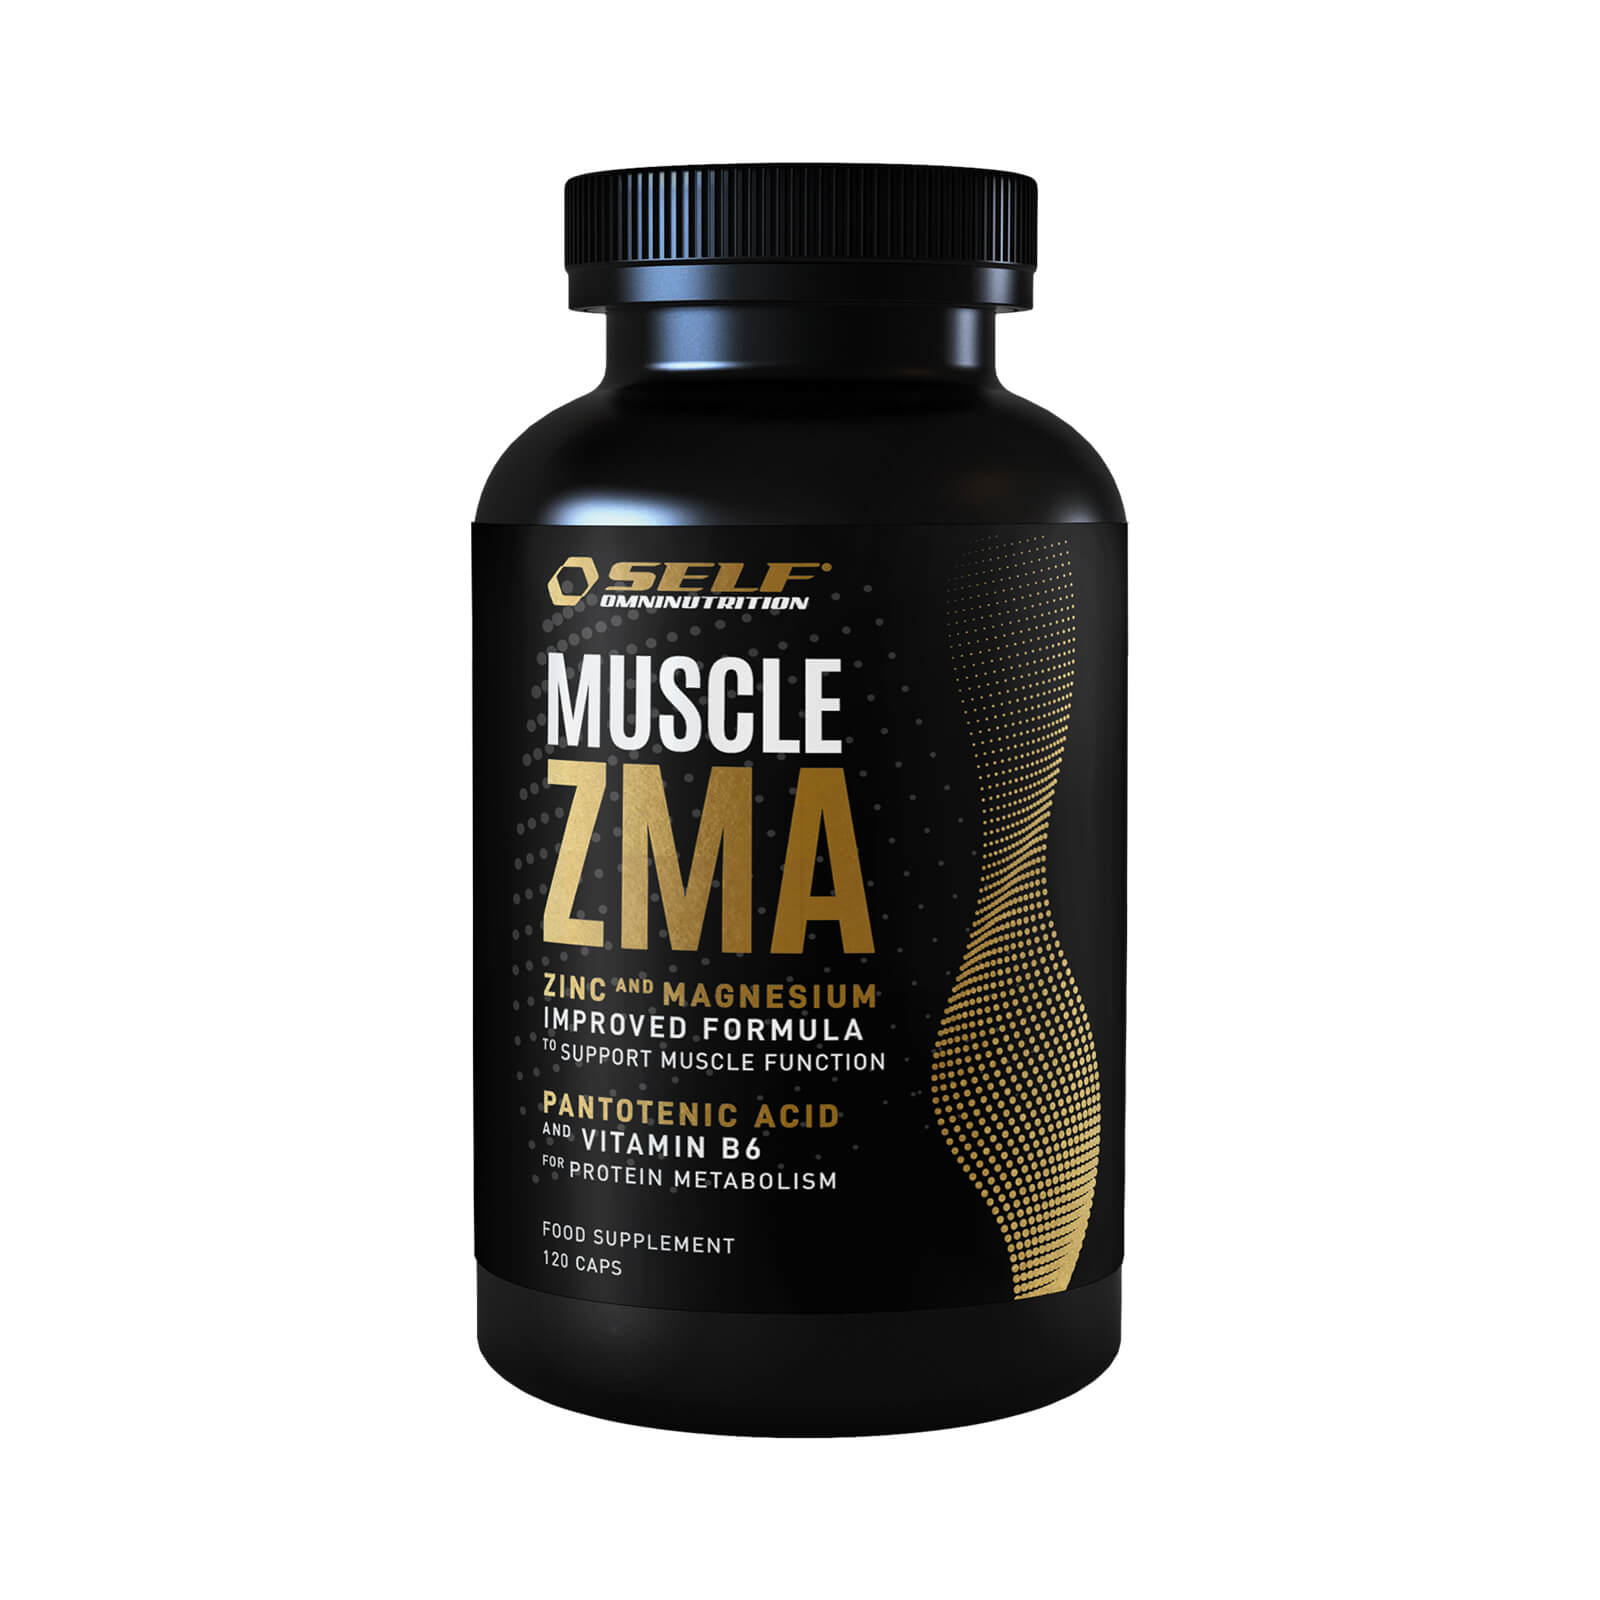 Muscle ZMA, 120 kapslar, Self